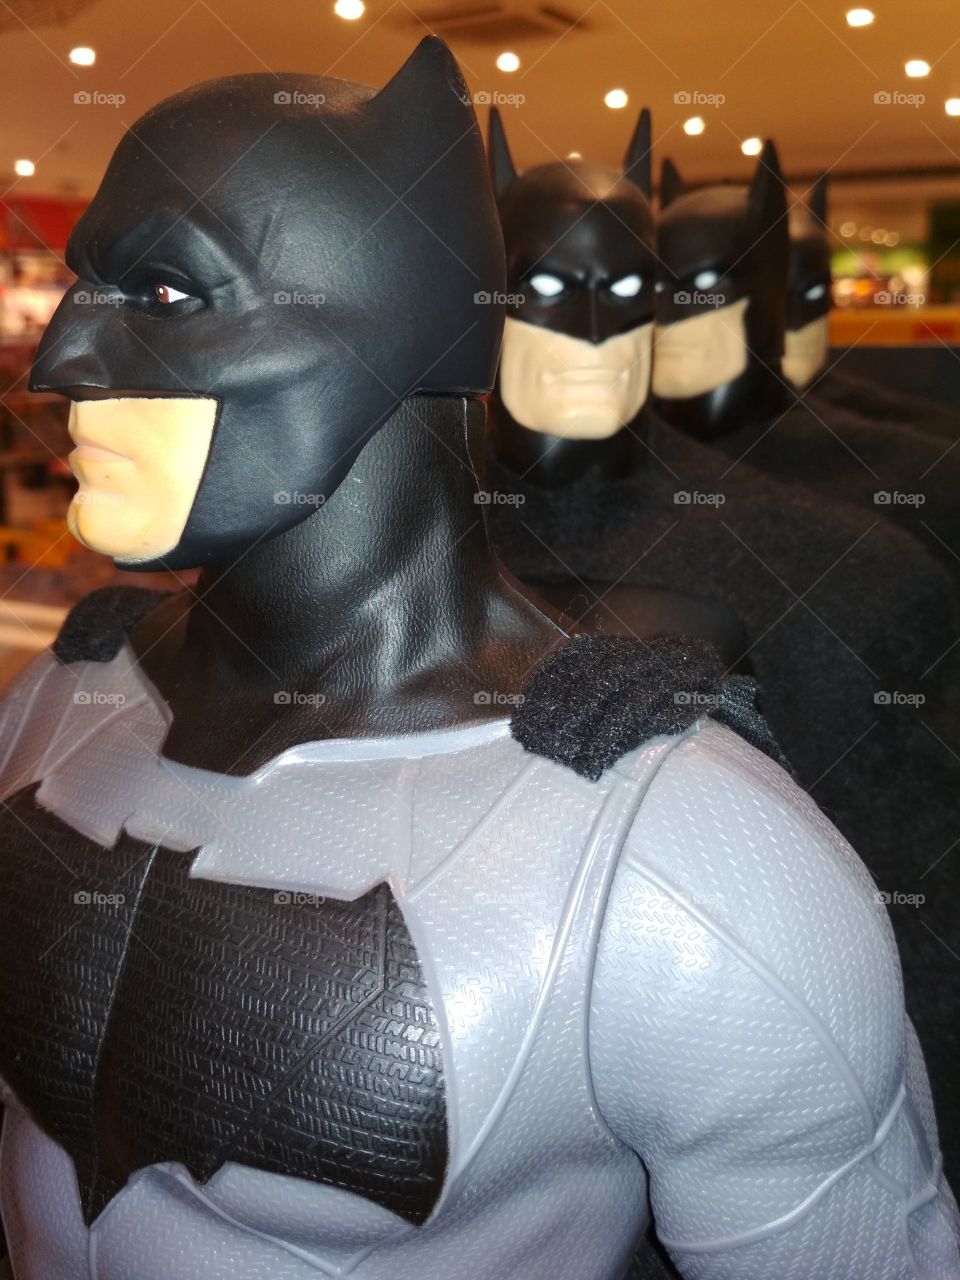 Batman toy